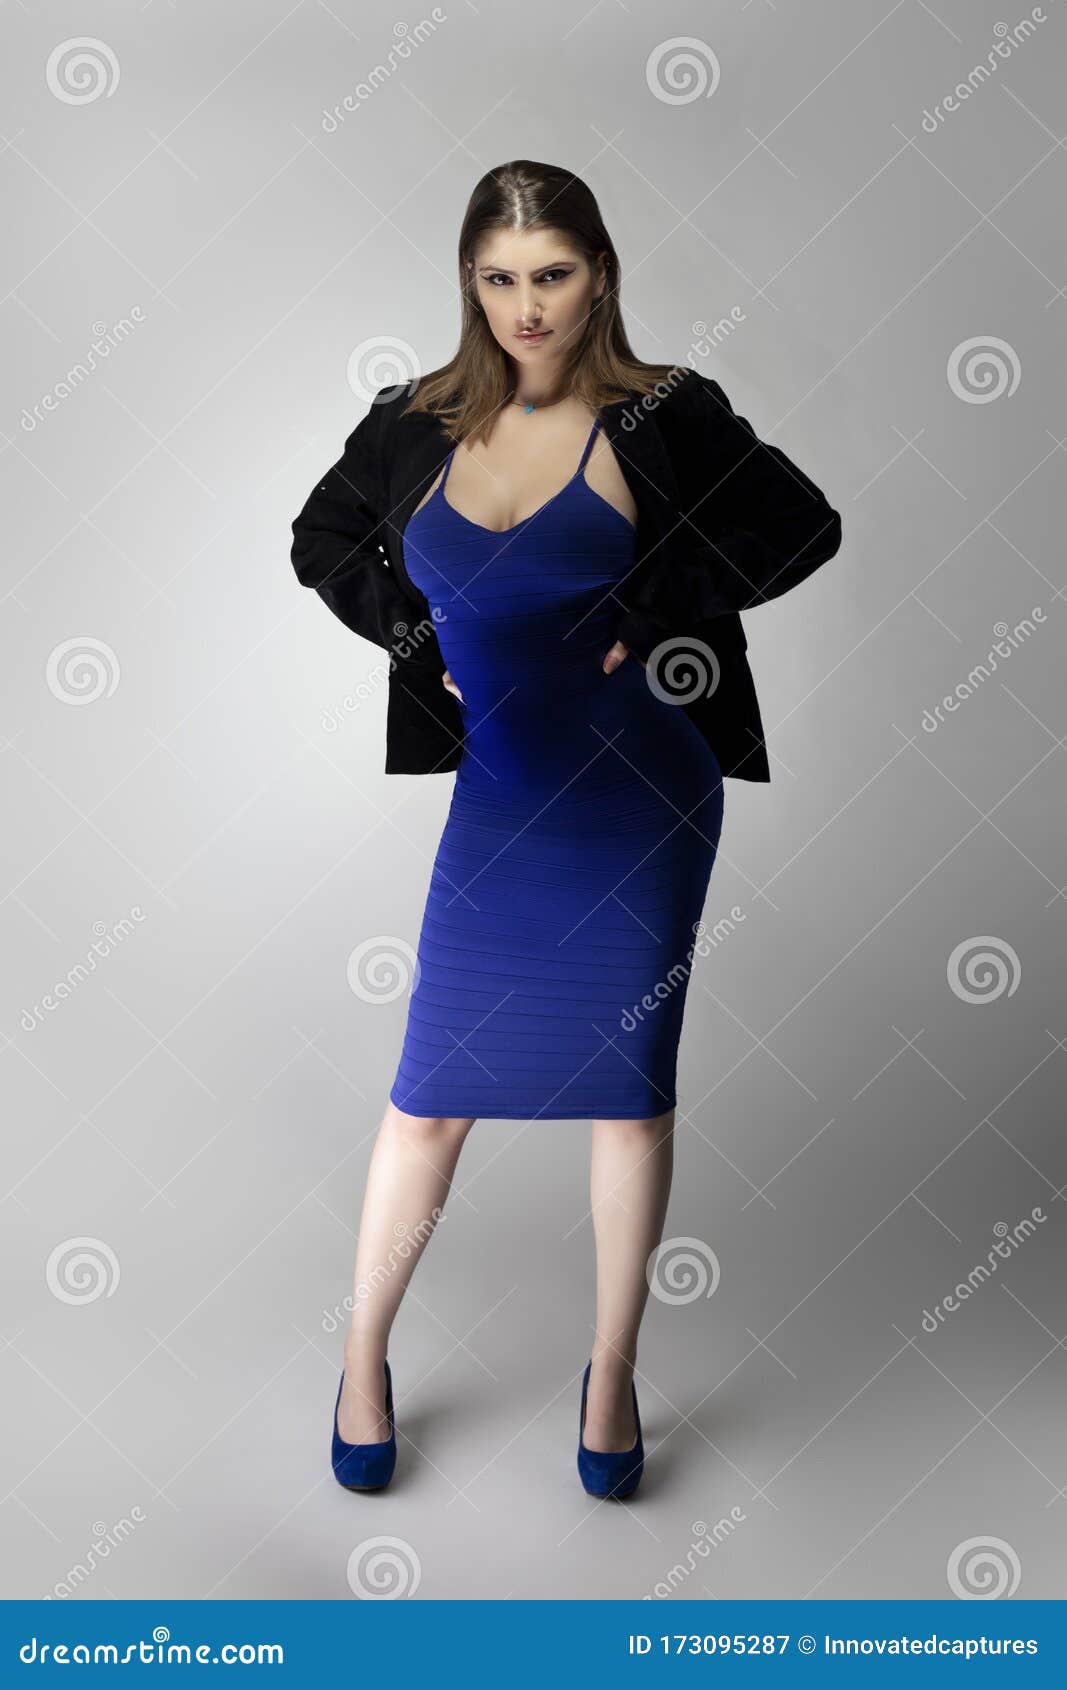 Modelo De Moda Posando Con Traje De Negocios Y Sexy Vestido Azul Imagen de  archivo - Imagen de muchacha, persona: 173095287